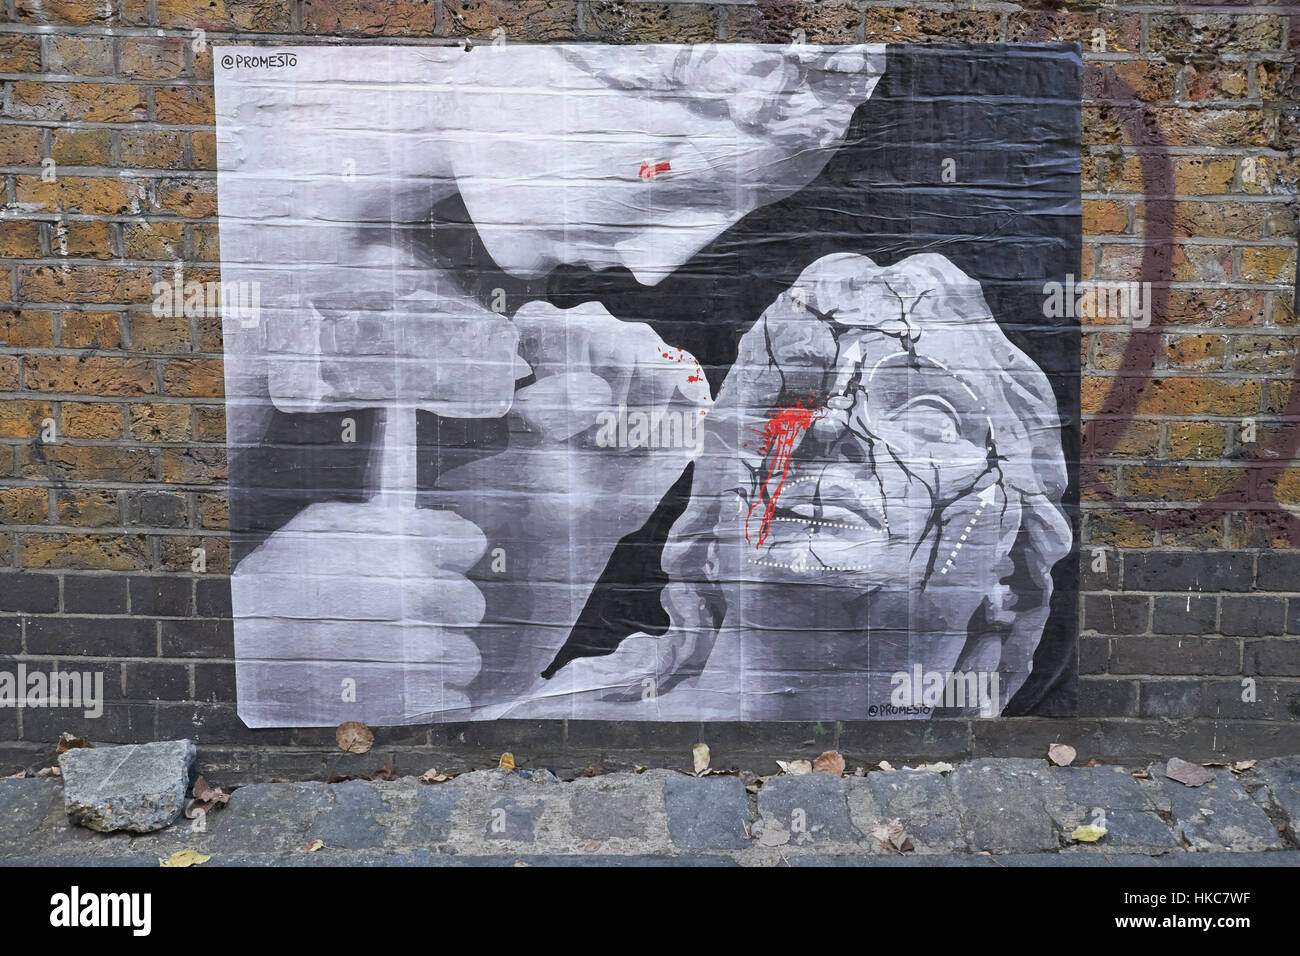 Arte di strada per artista Promesto. Buxton St, Shoreditch, East London, England. Foto Stock